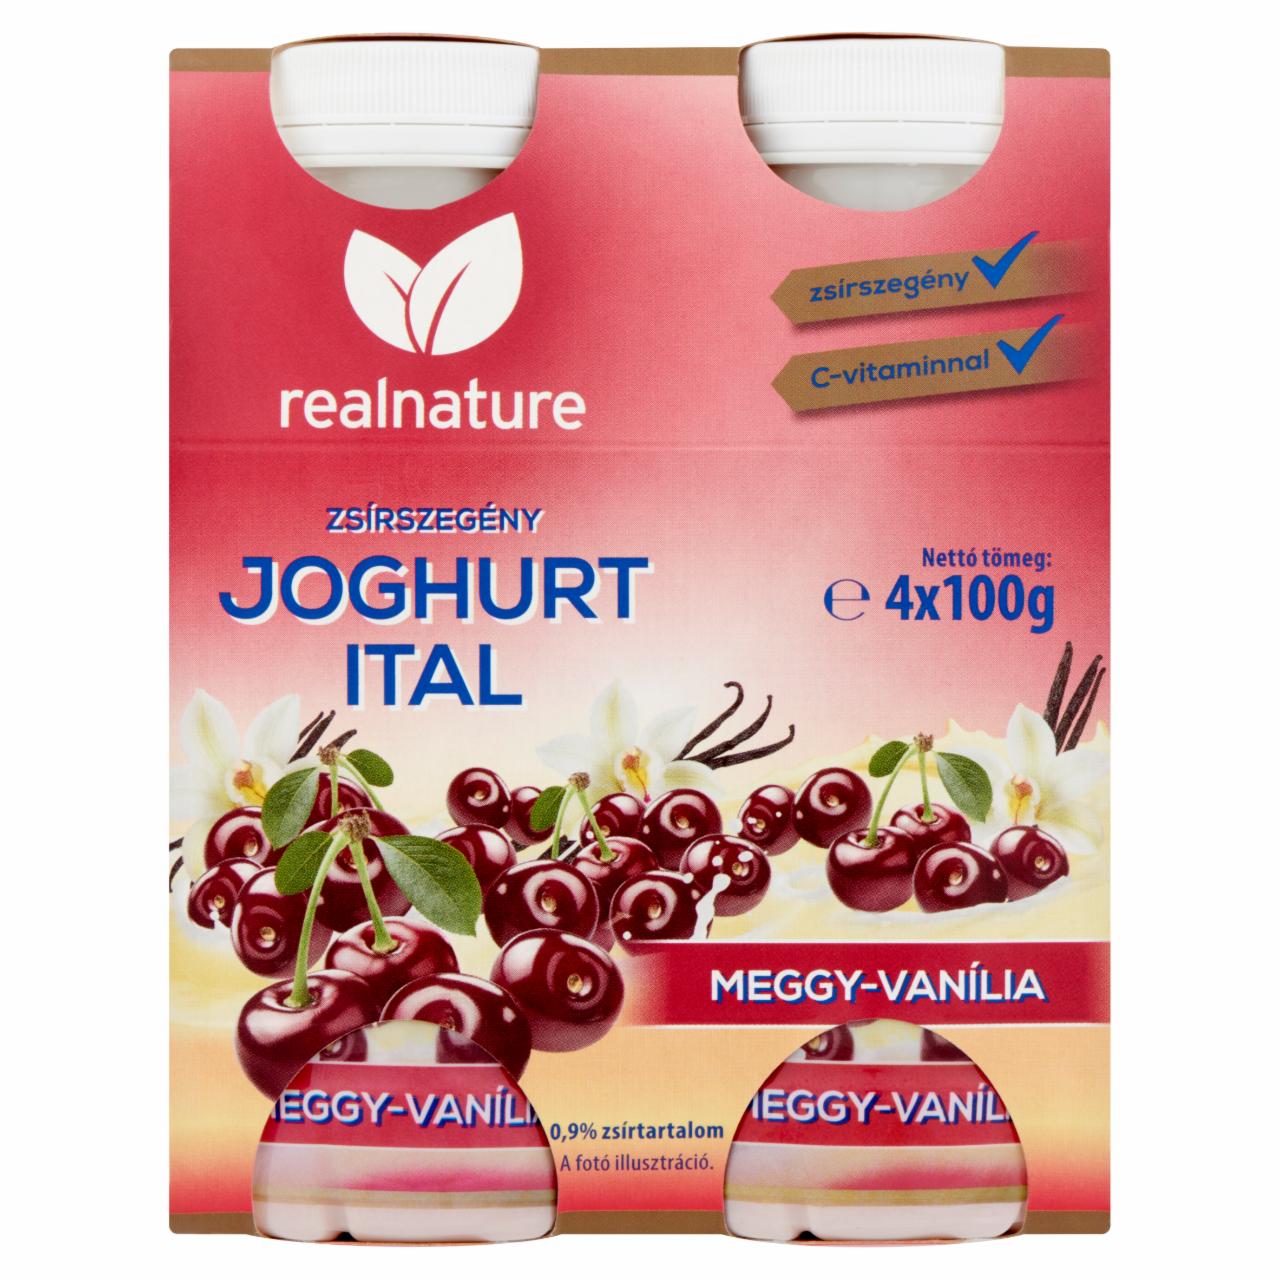 Képek - Real Nature meggyes-vaníliás zsírszegény joghurtital C-vitaminnal 4 x 100 g